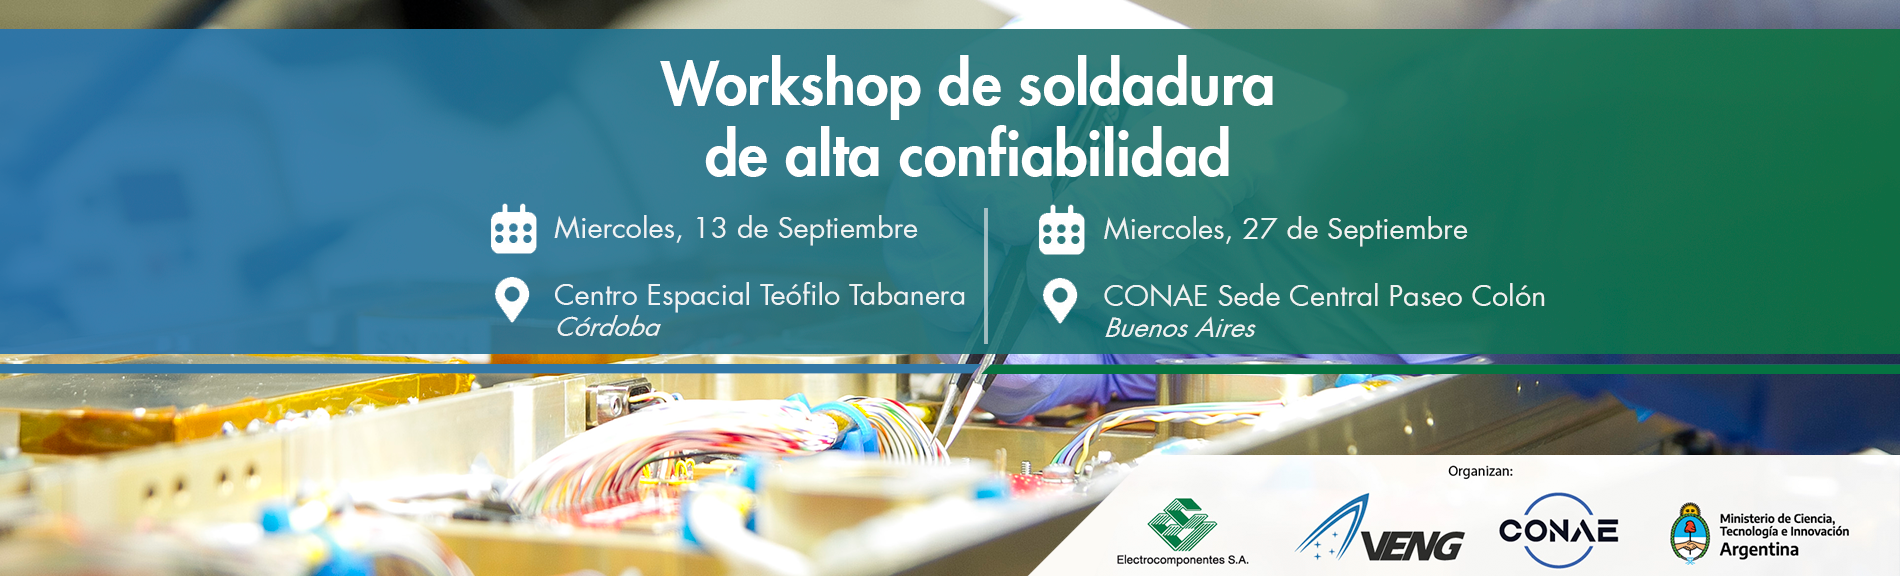 Workshop de Soldadura de Alta Confiabilidad